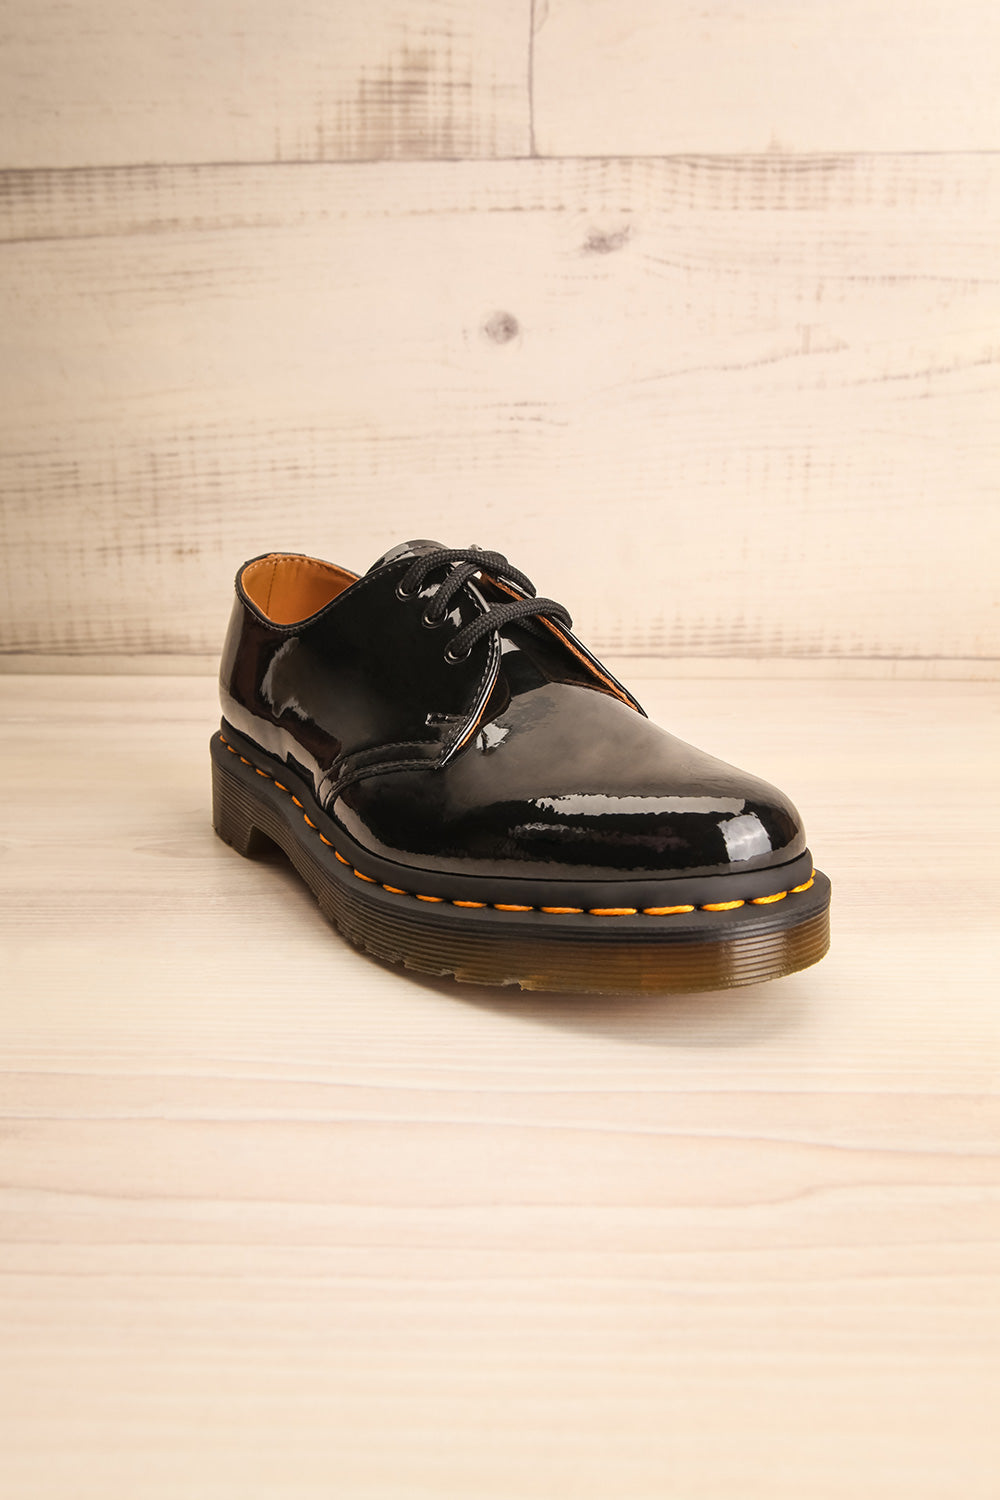 Kingswood Patent Black Dr. Martens Shoes front view | La Petite Garçonne Chpt. 2